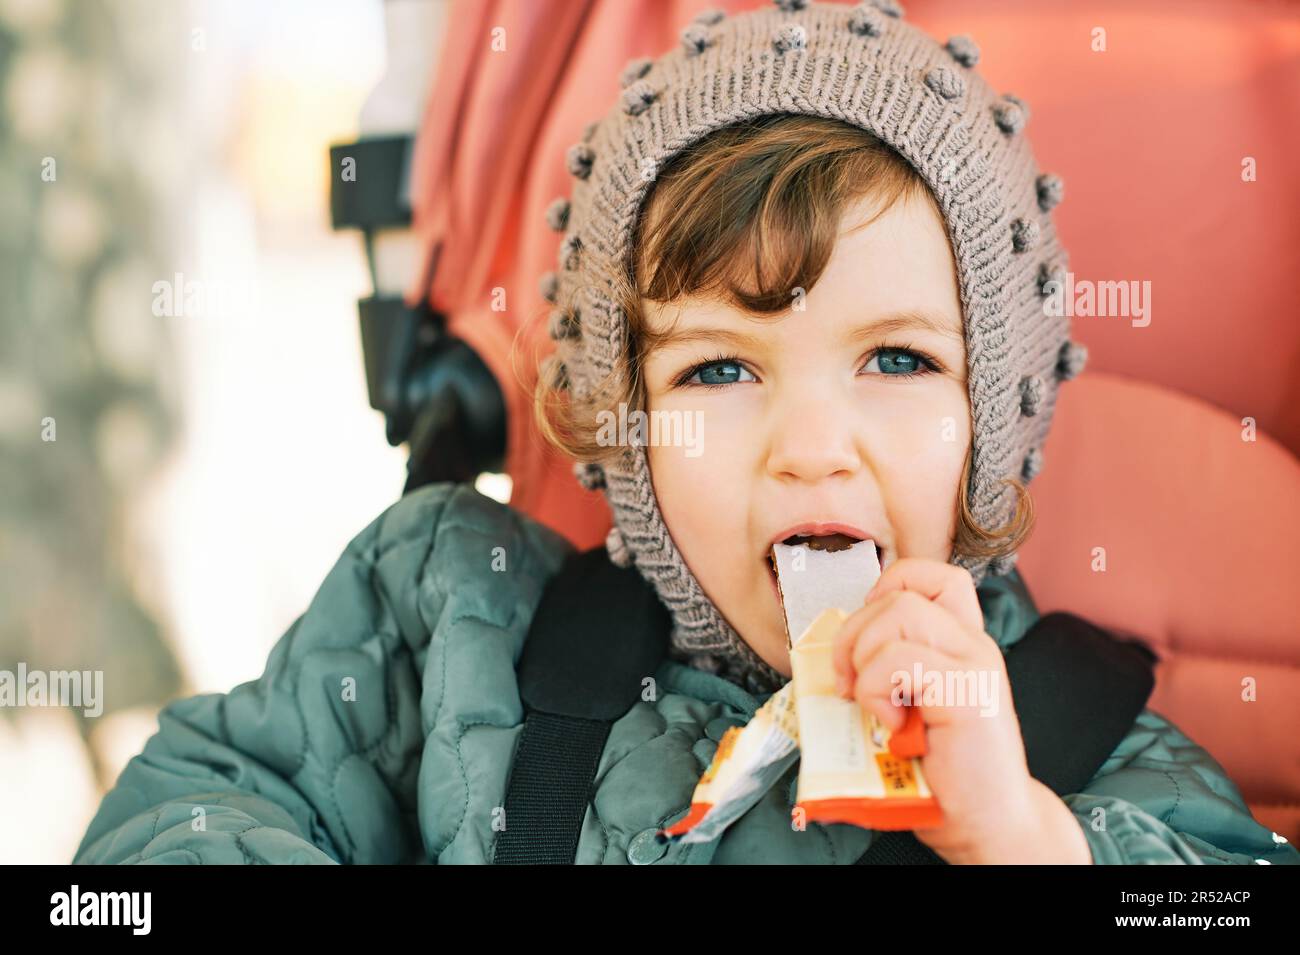 Un petit enfant heureux qui mange un bar à fruits, un en-cas sain, assis dans une poussette Banque D'Images